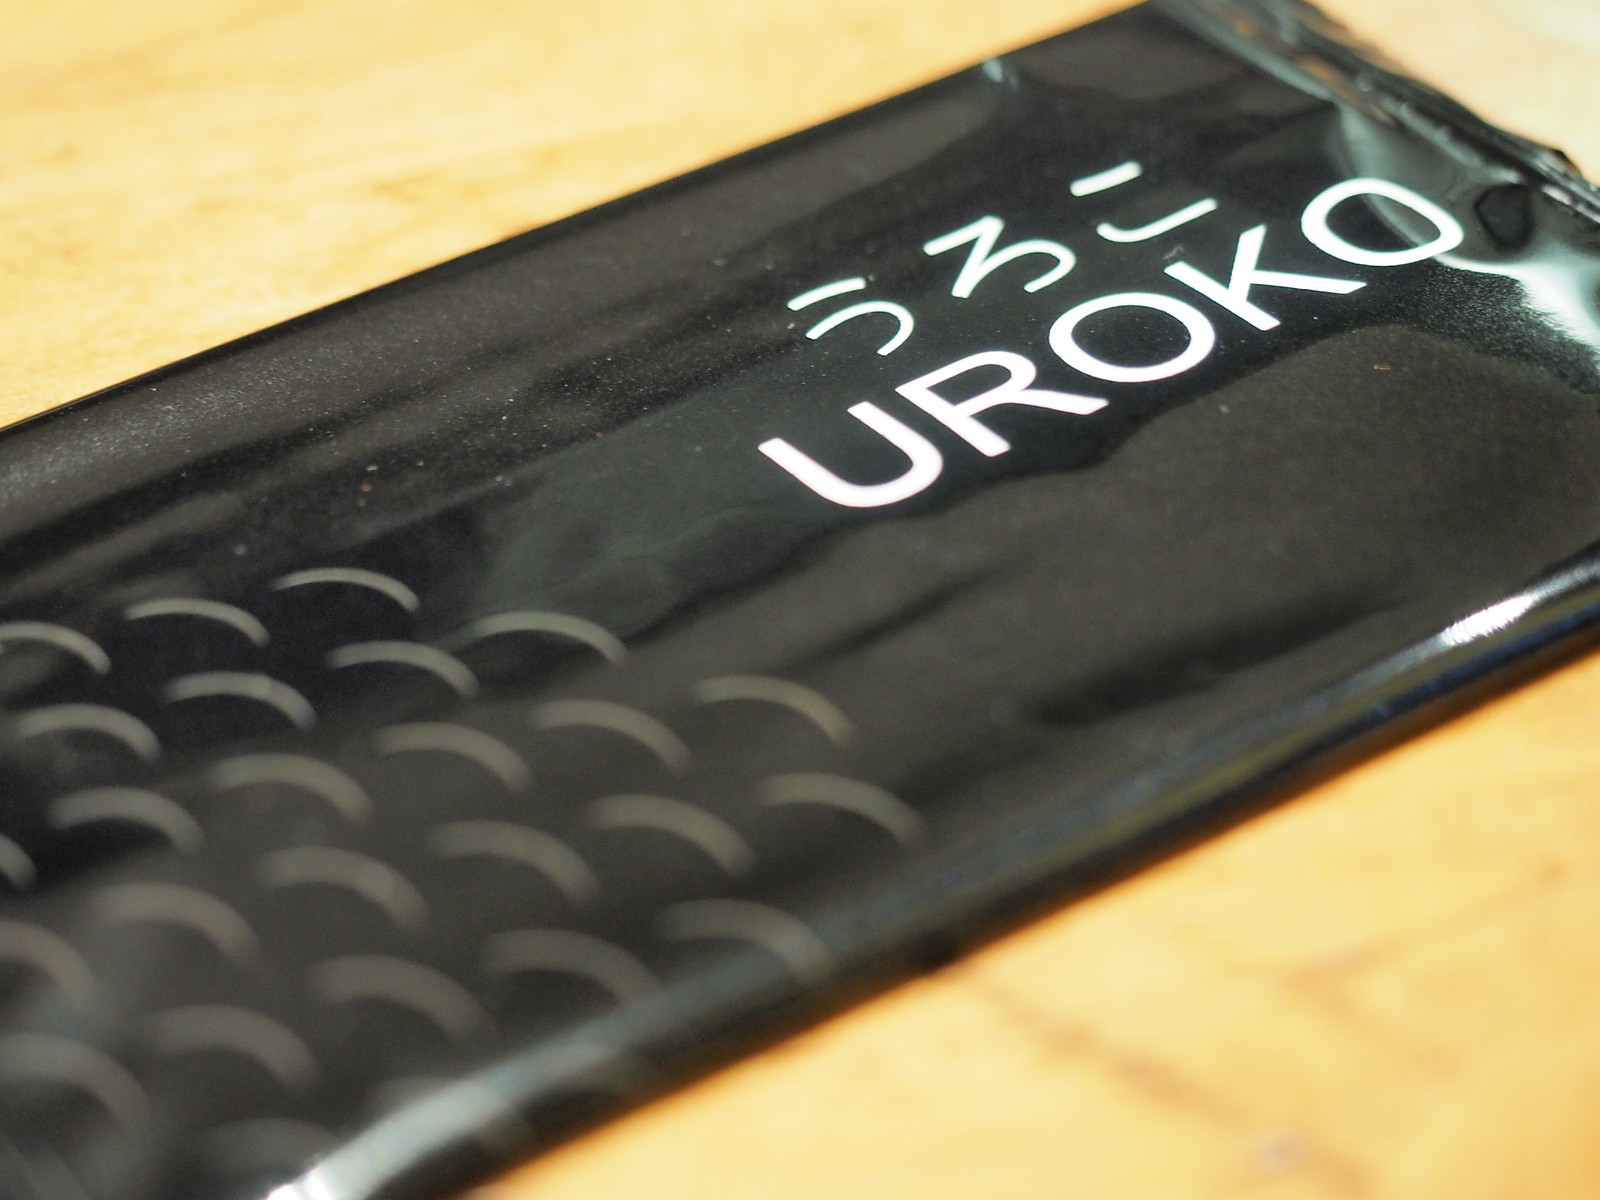 Uroko Japanese Cuisine's tissue pack